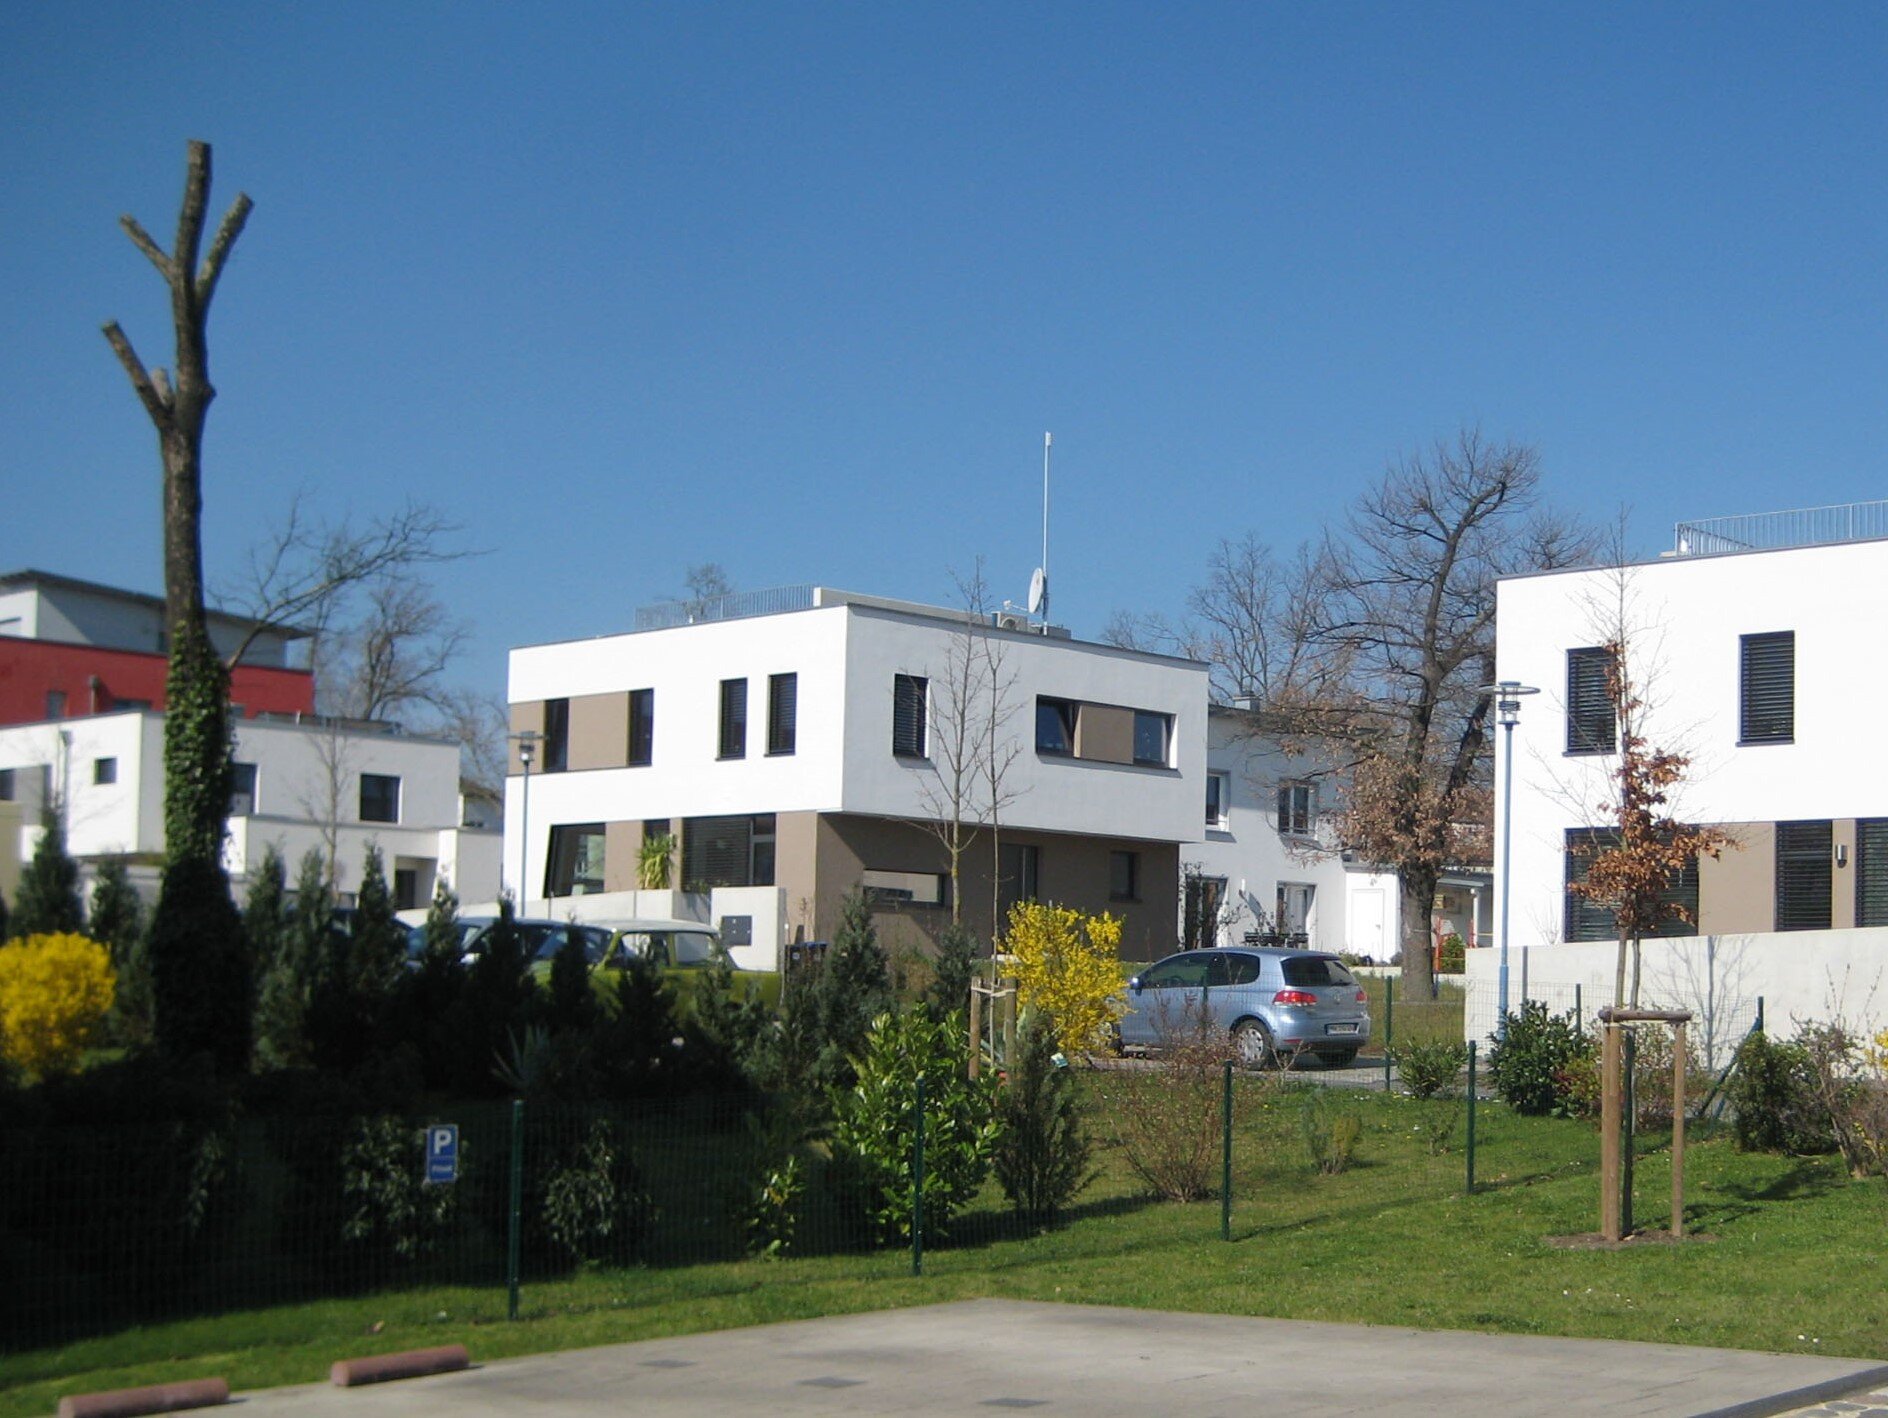 Symbolbild mit Einfamilienhäusern in Heide-Süd